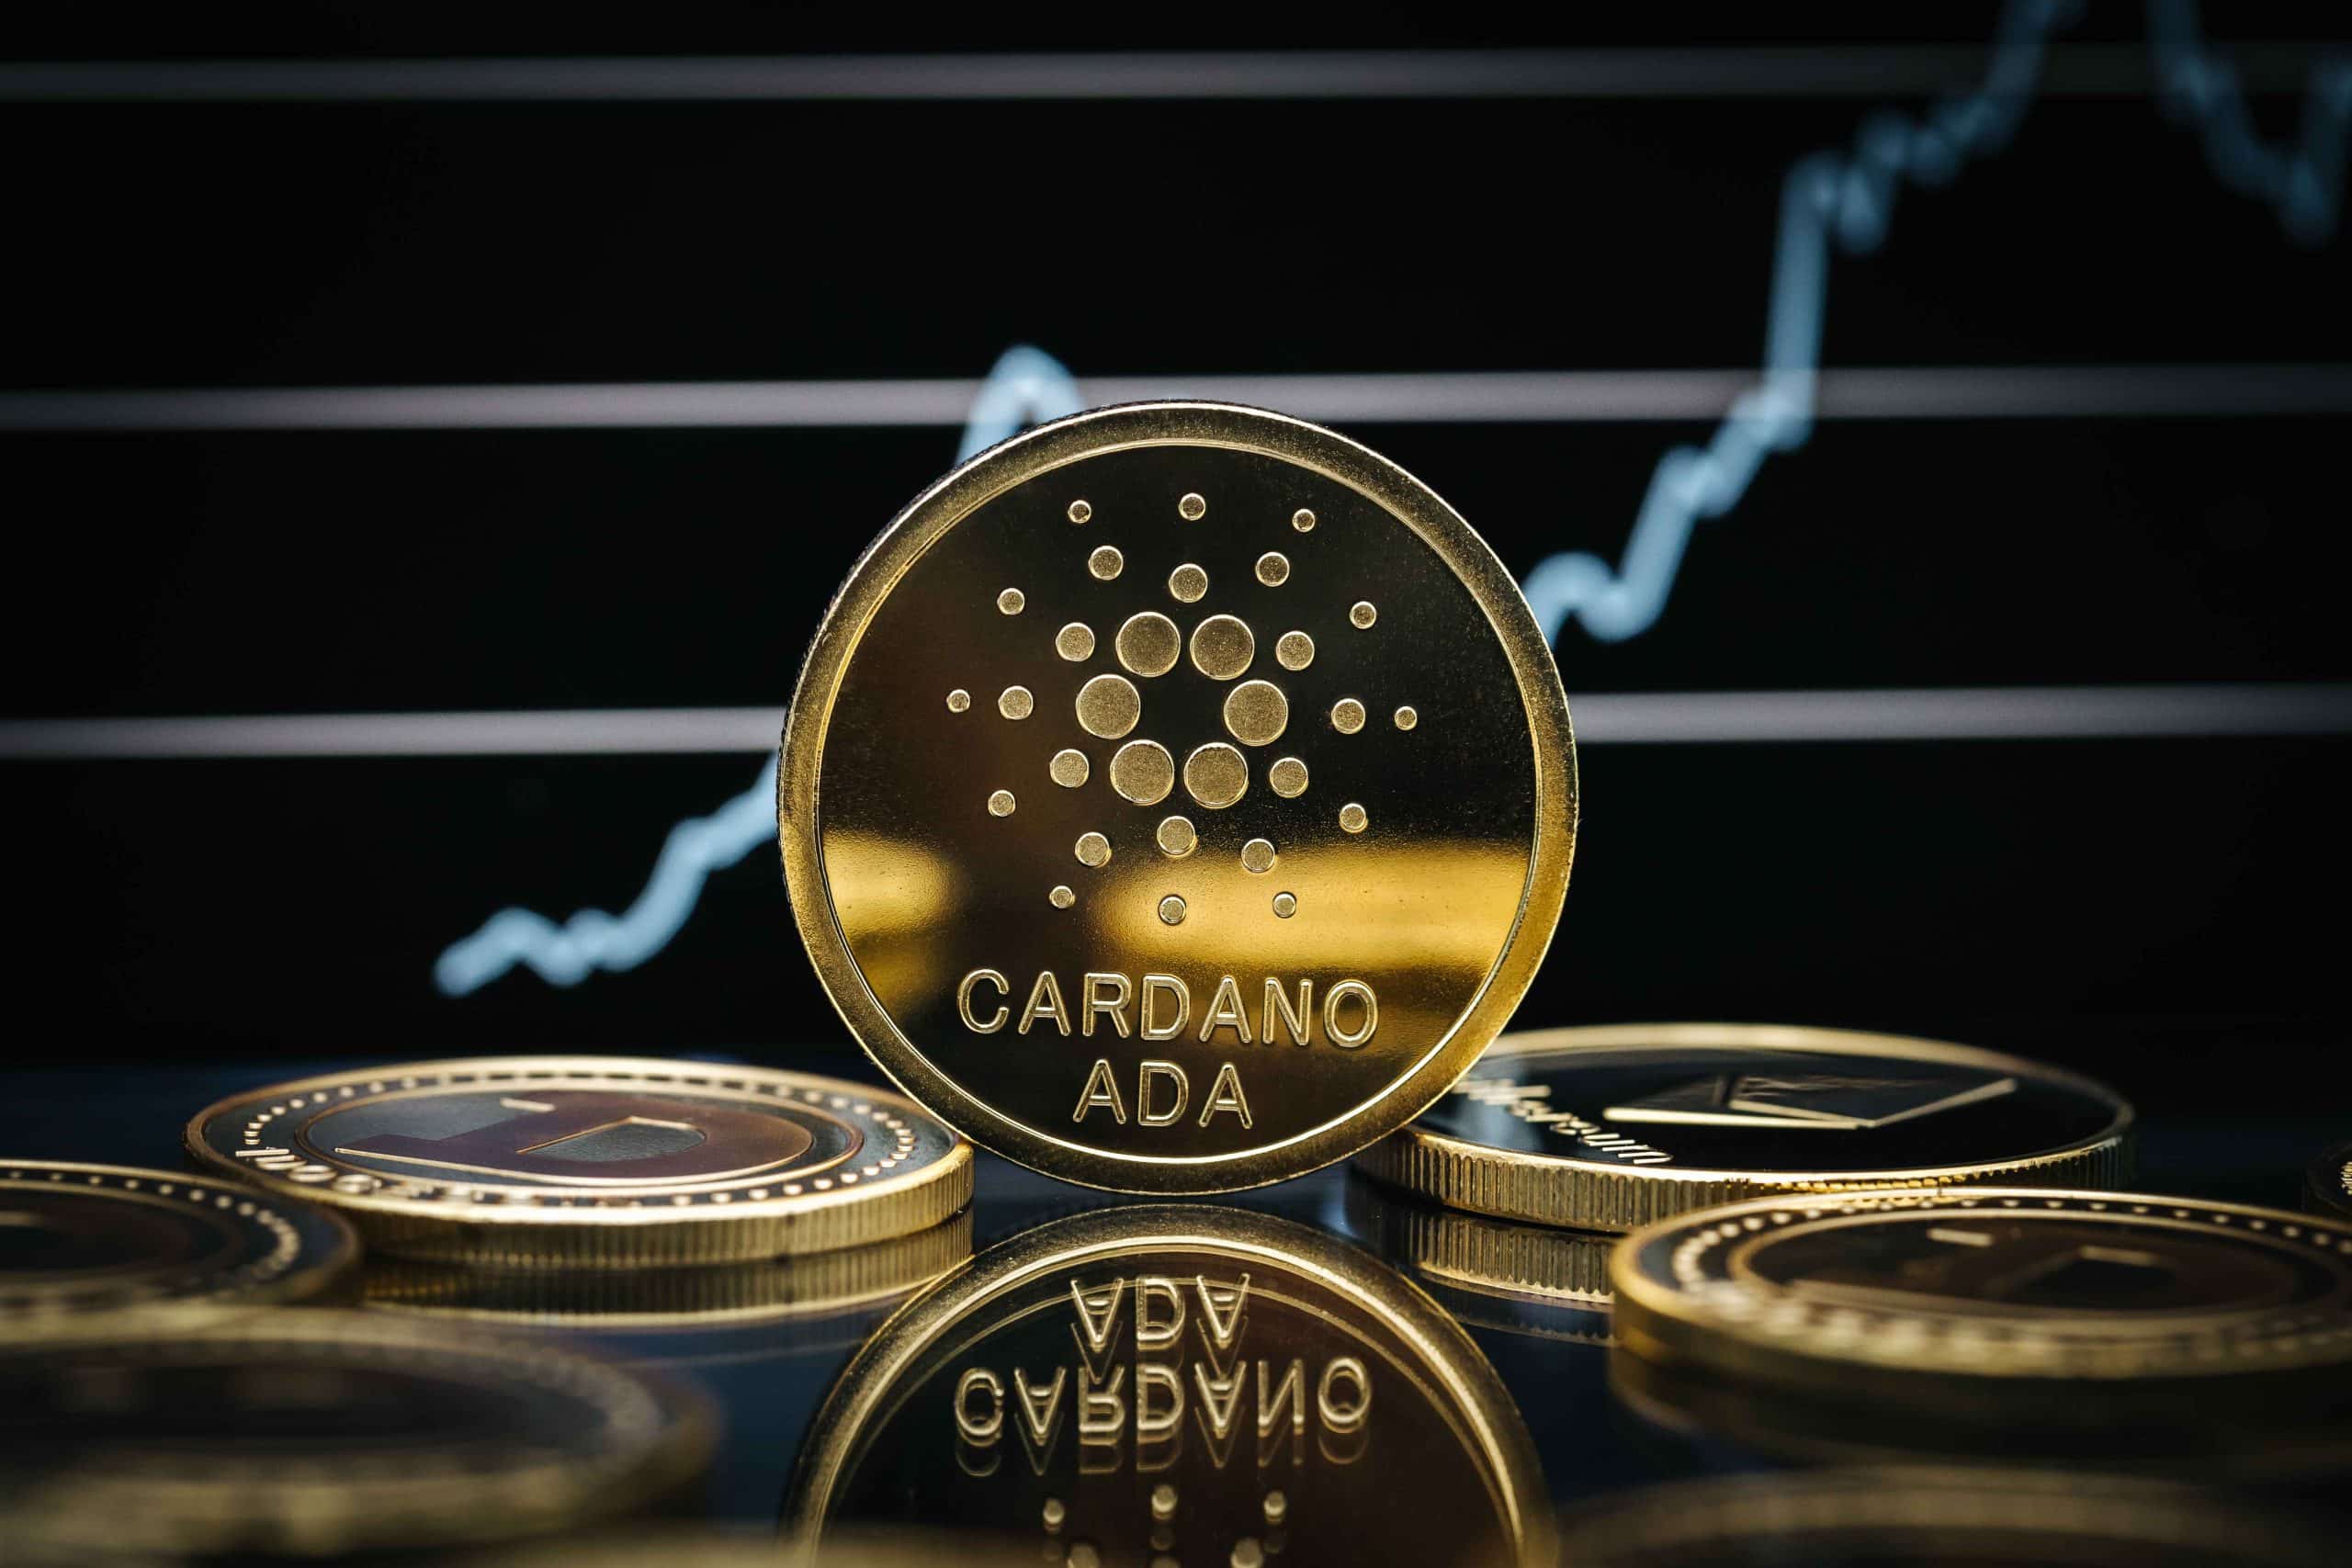 Cardano - The Future of Blockchain